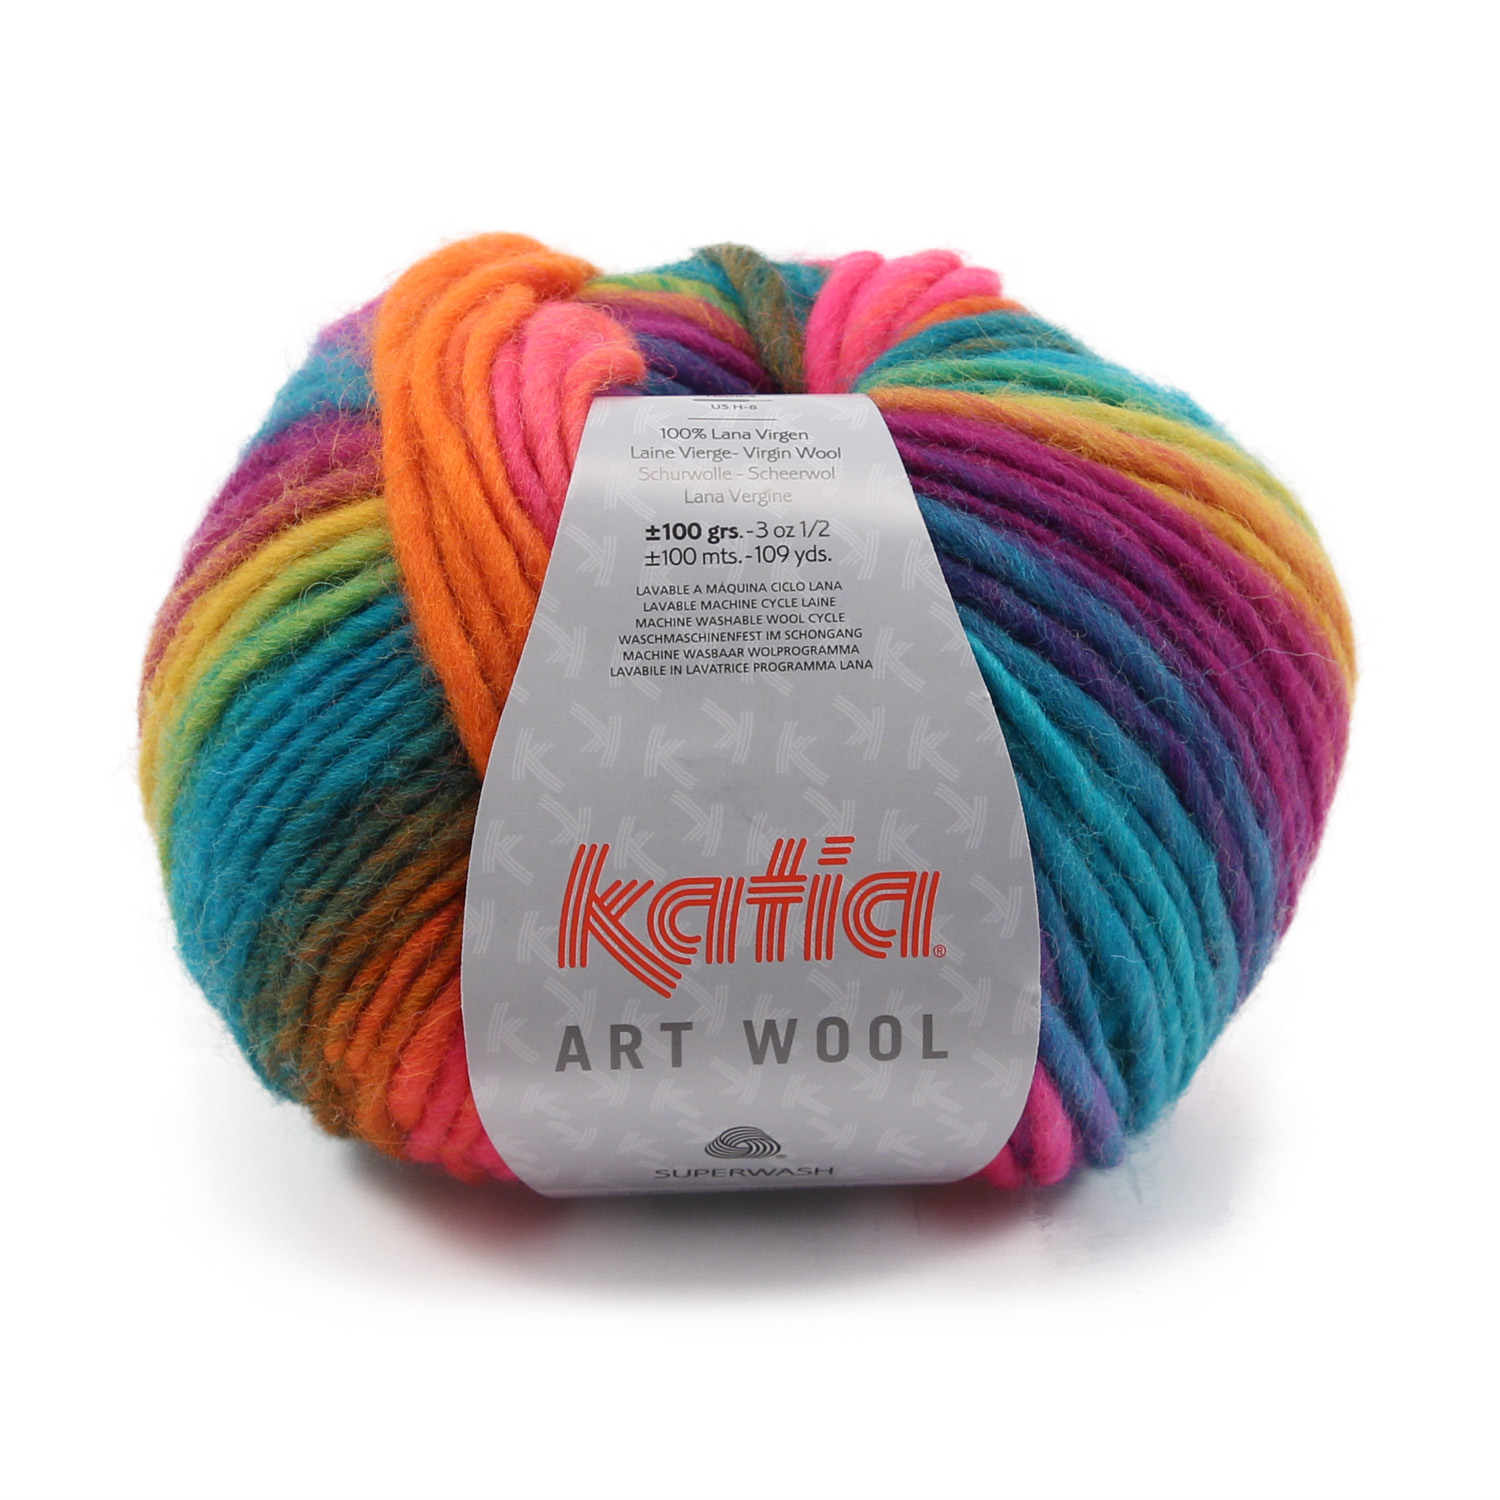 Nuevos kits para aprender con nuevas calidades de Katia 100% naturales -  Costurea Blog